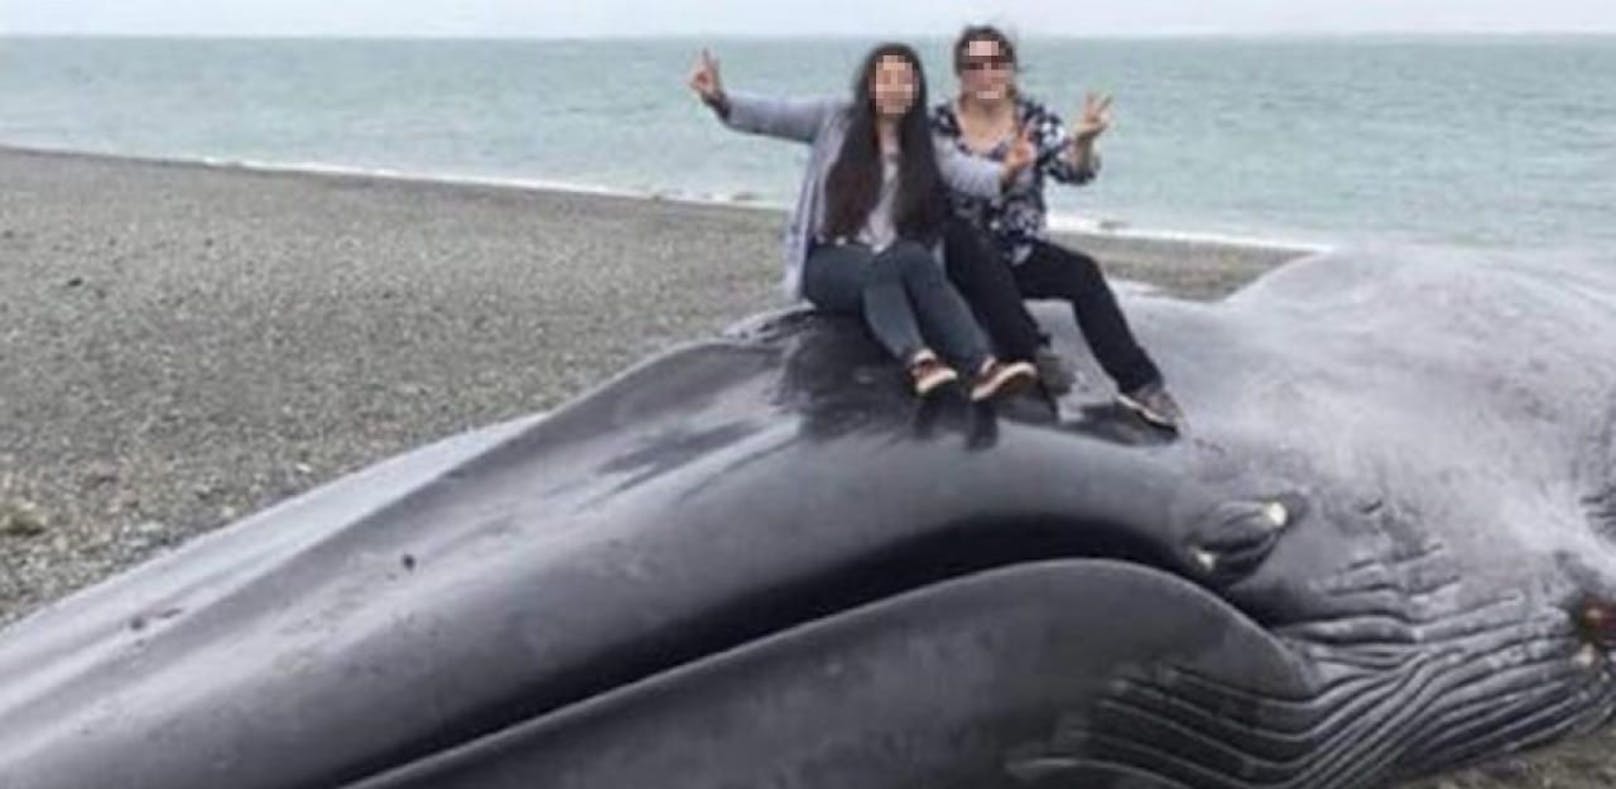 Touristen schänden gestrandeten Wal